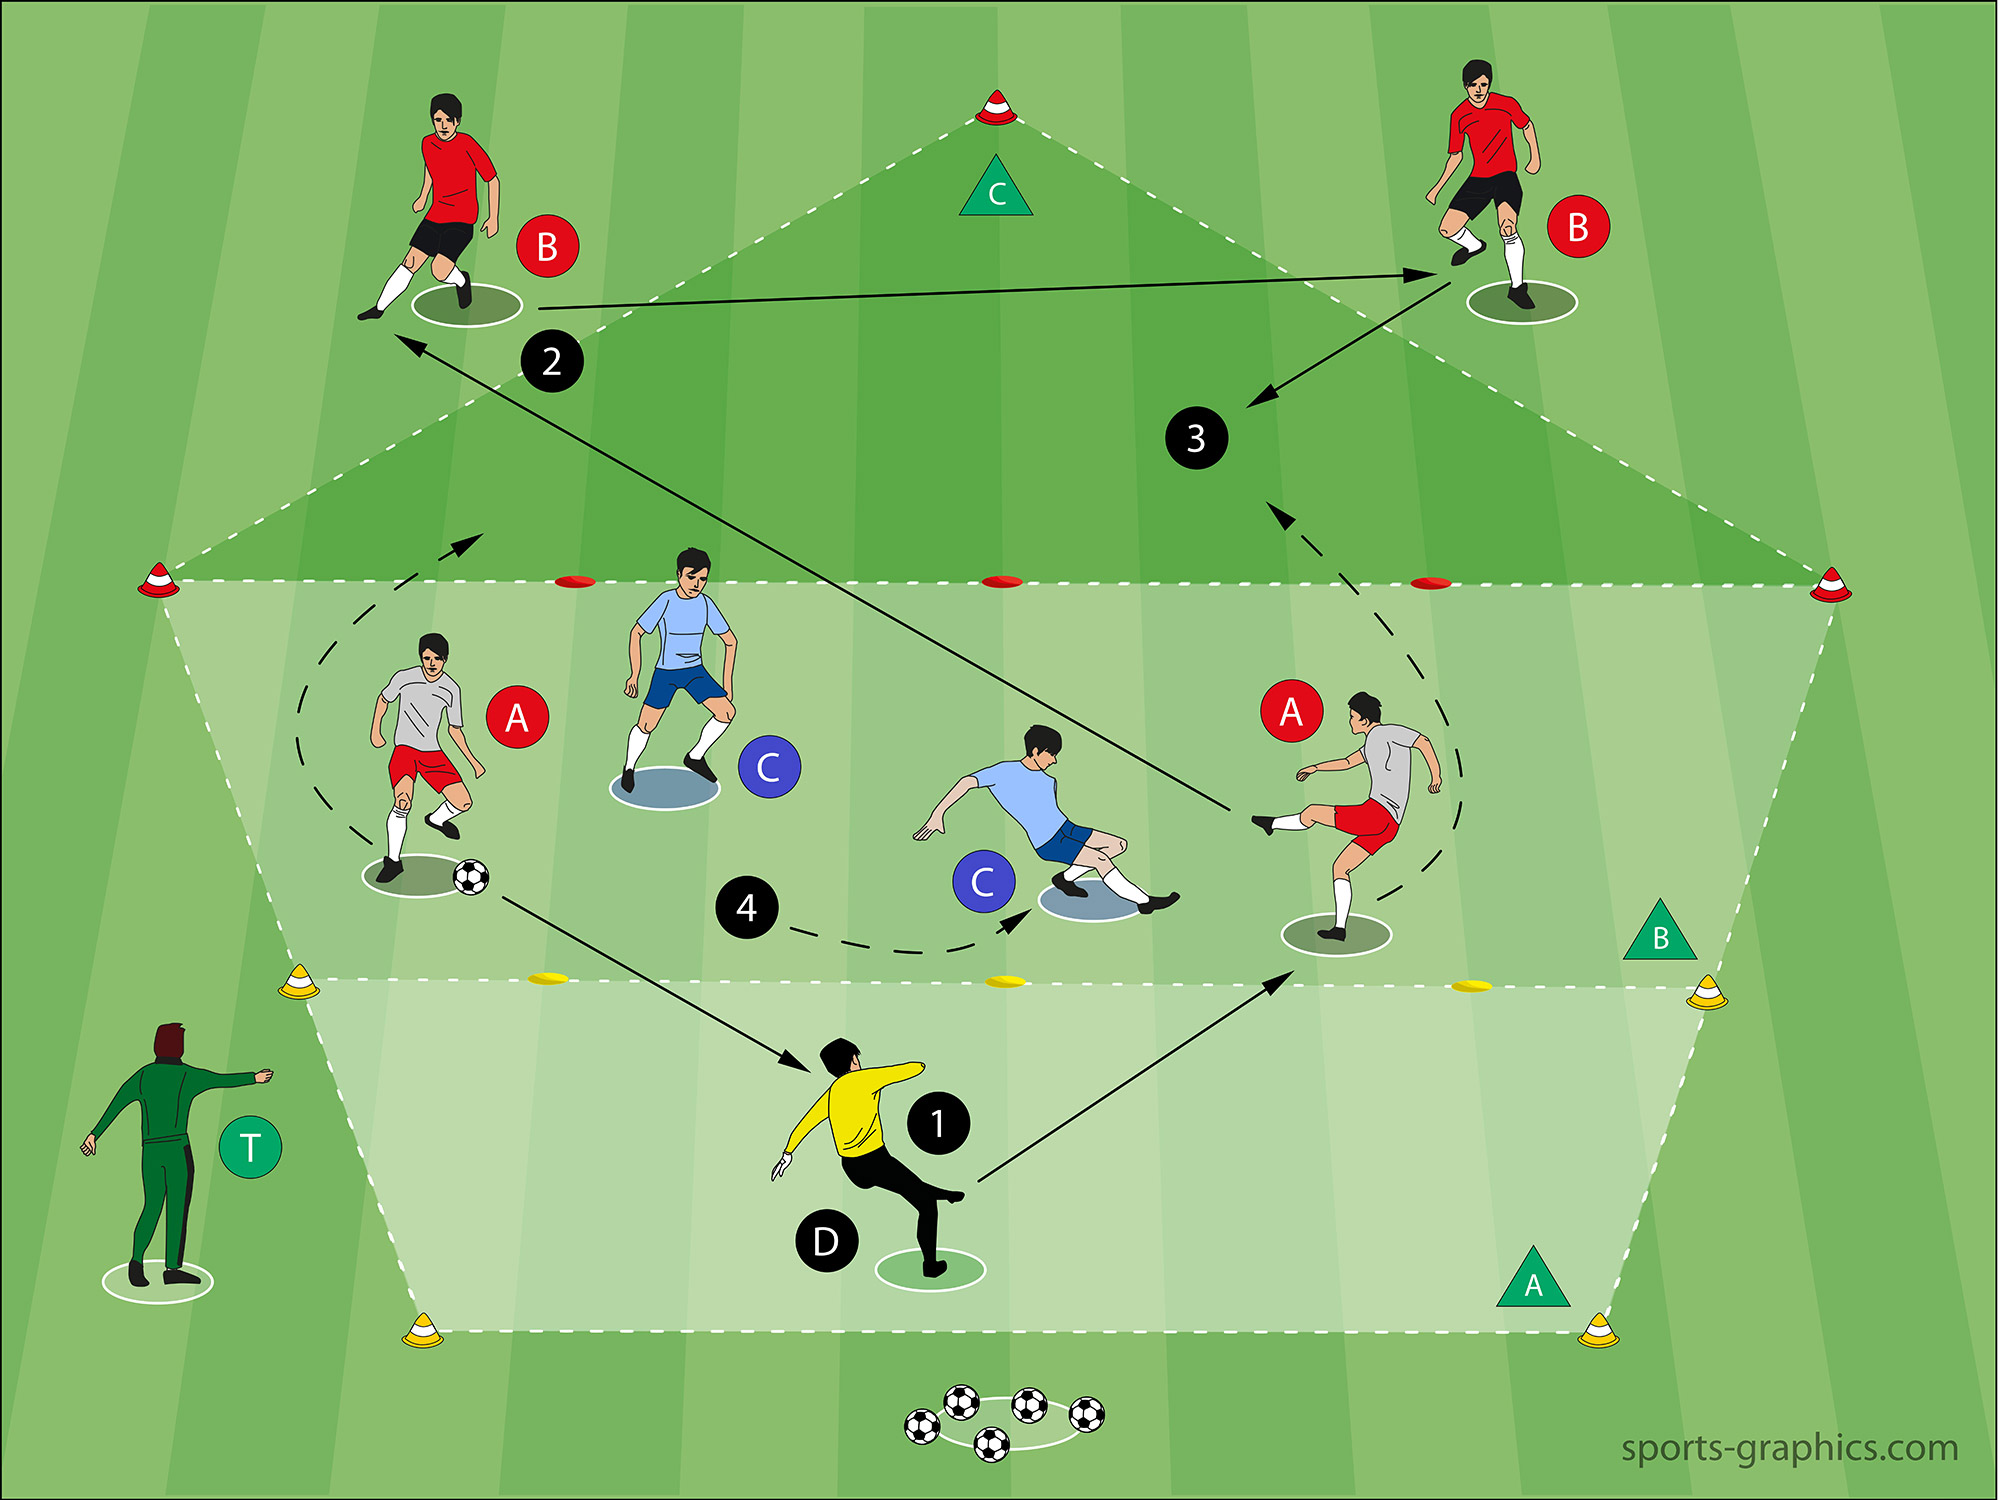 Ballbesitz-Übung - 2 plus 3 gegen 2 - Spieleröffnung vs. Anlaufen